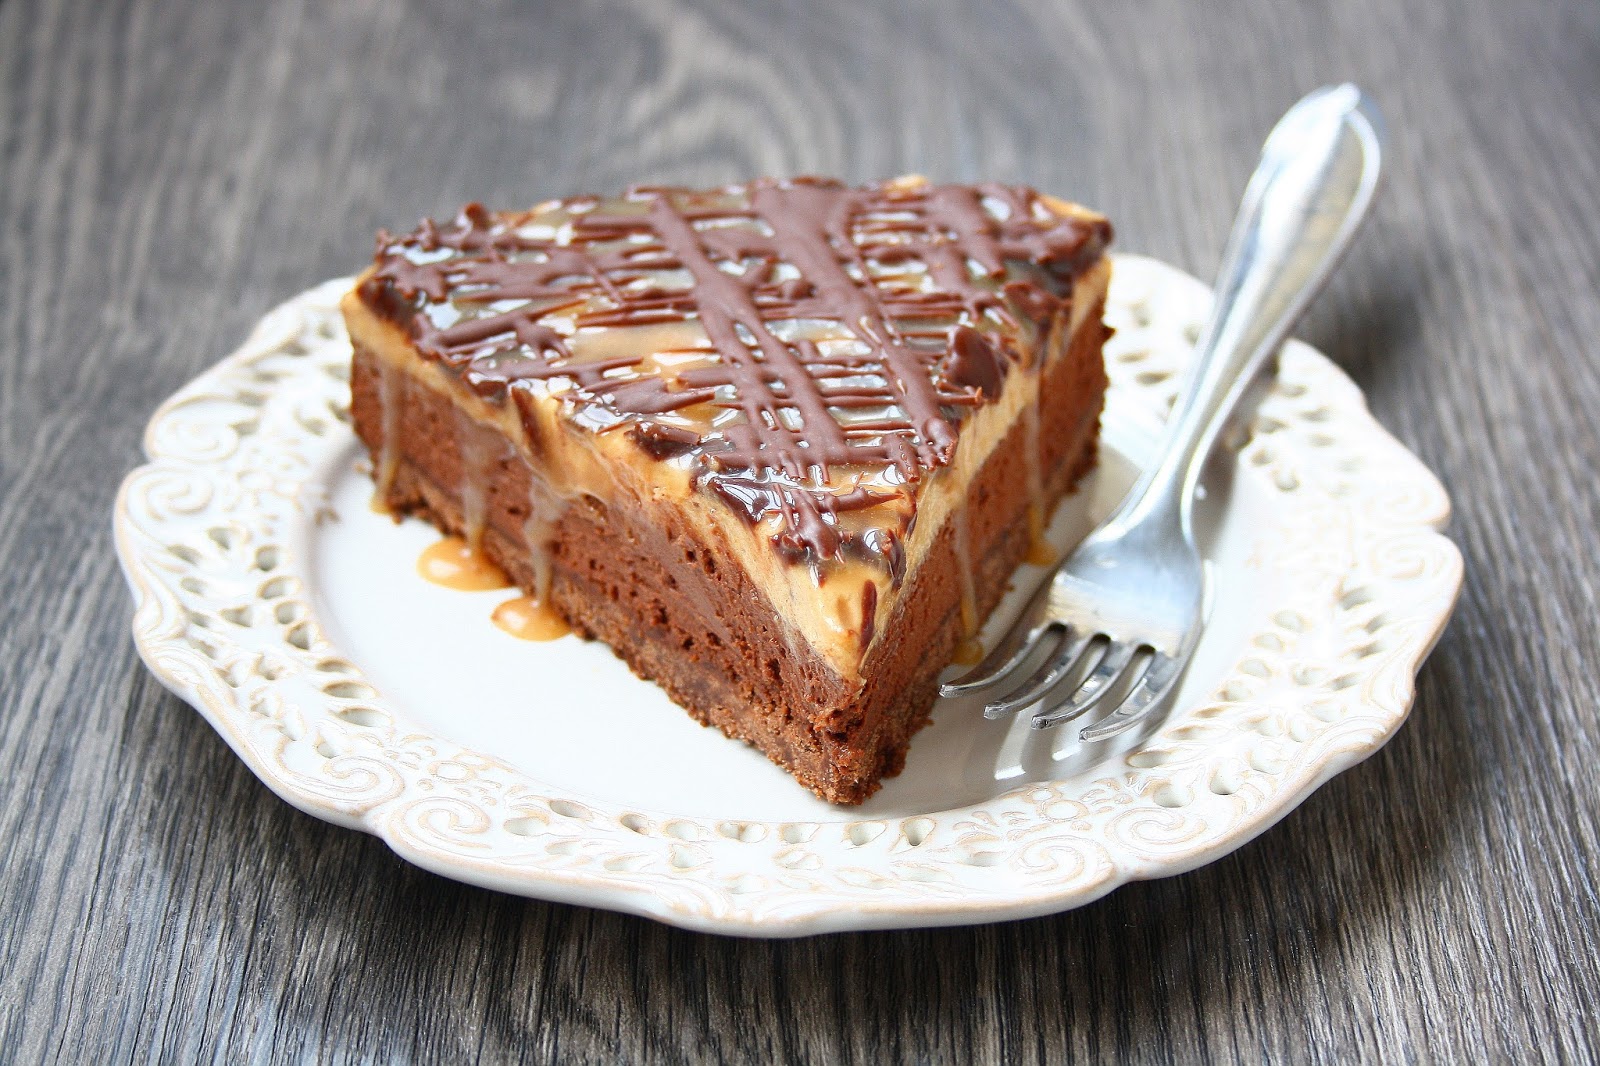 Арахисовый торт - рецепт нежнейшего угощения, которое улучшит настроение десерты,торты